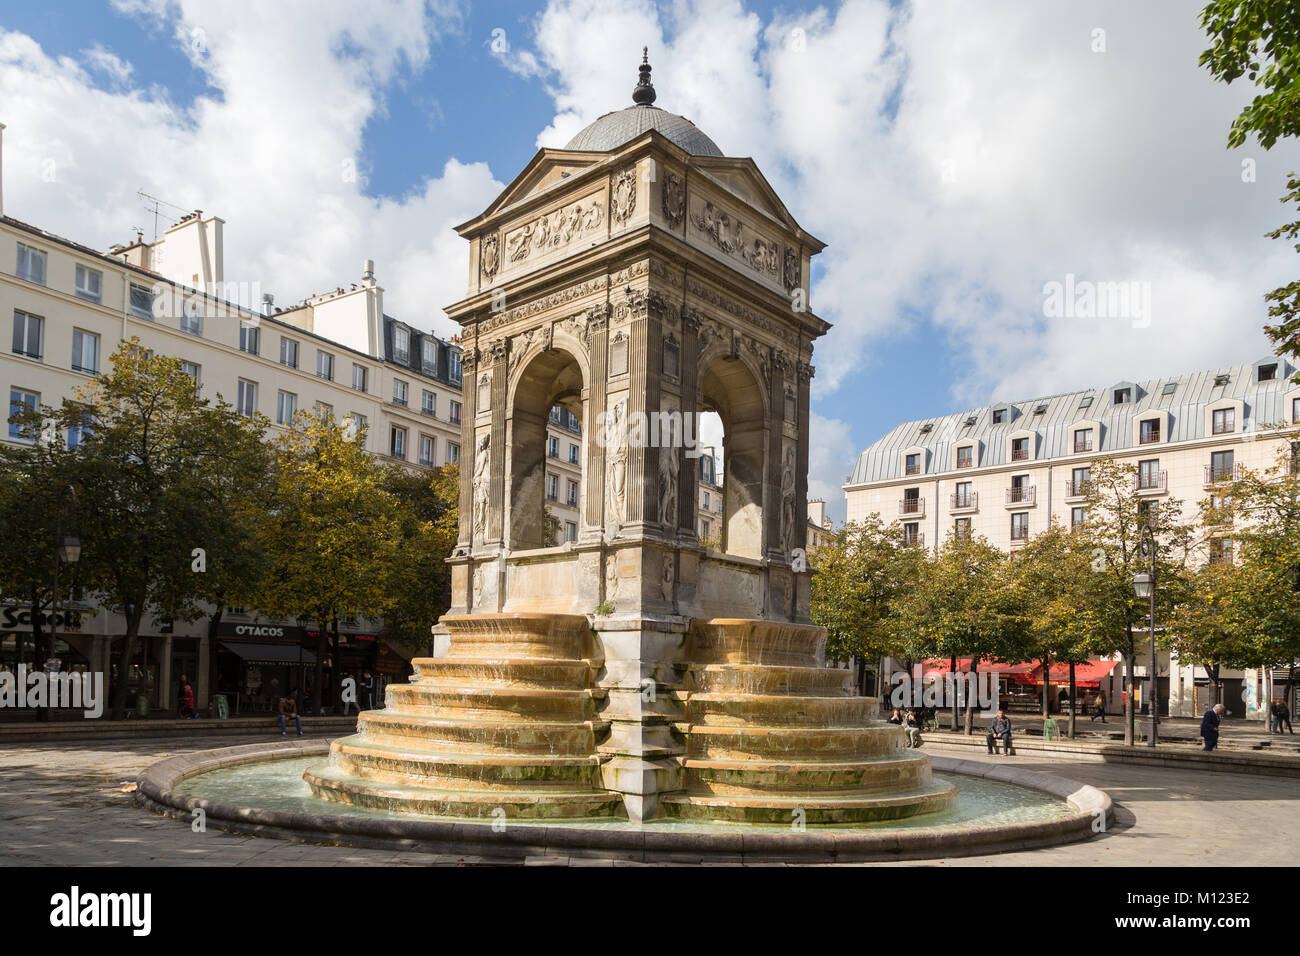 Fontaine des Innocents,Square des Innocents,Paris,France Stock Photo